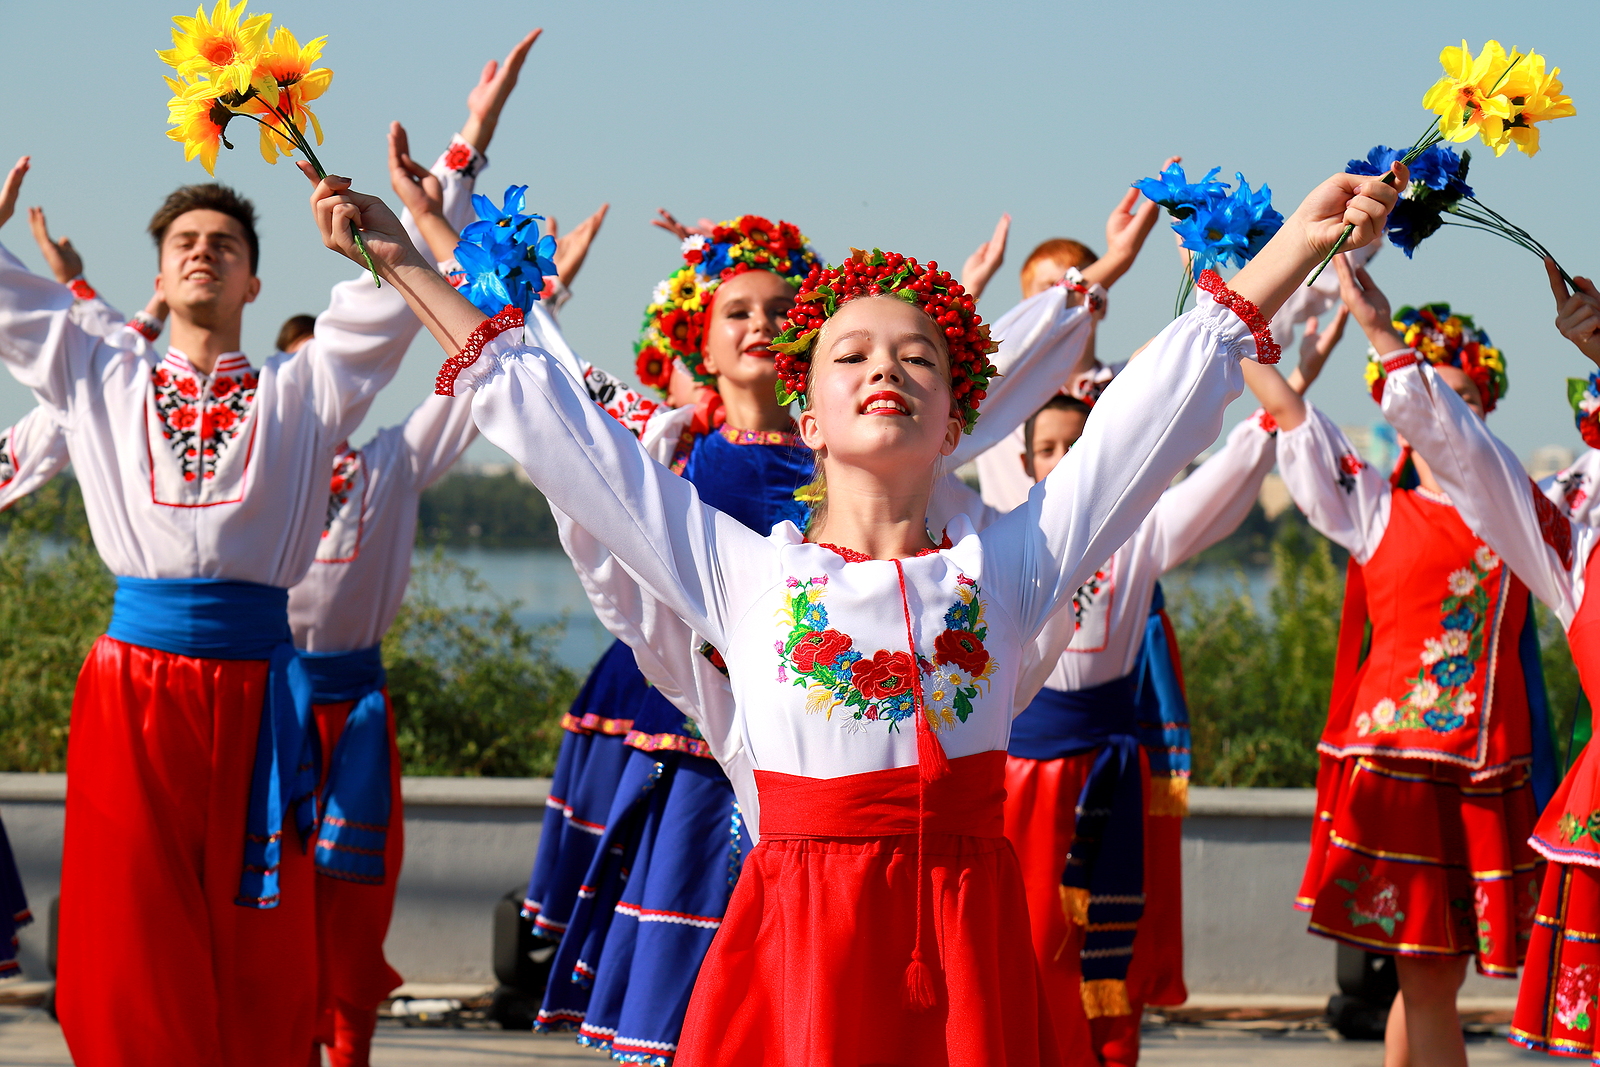 Ucraina sărbătorește Ziua Independenței: Europa emergentă în această săptămână